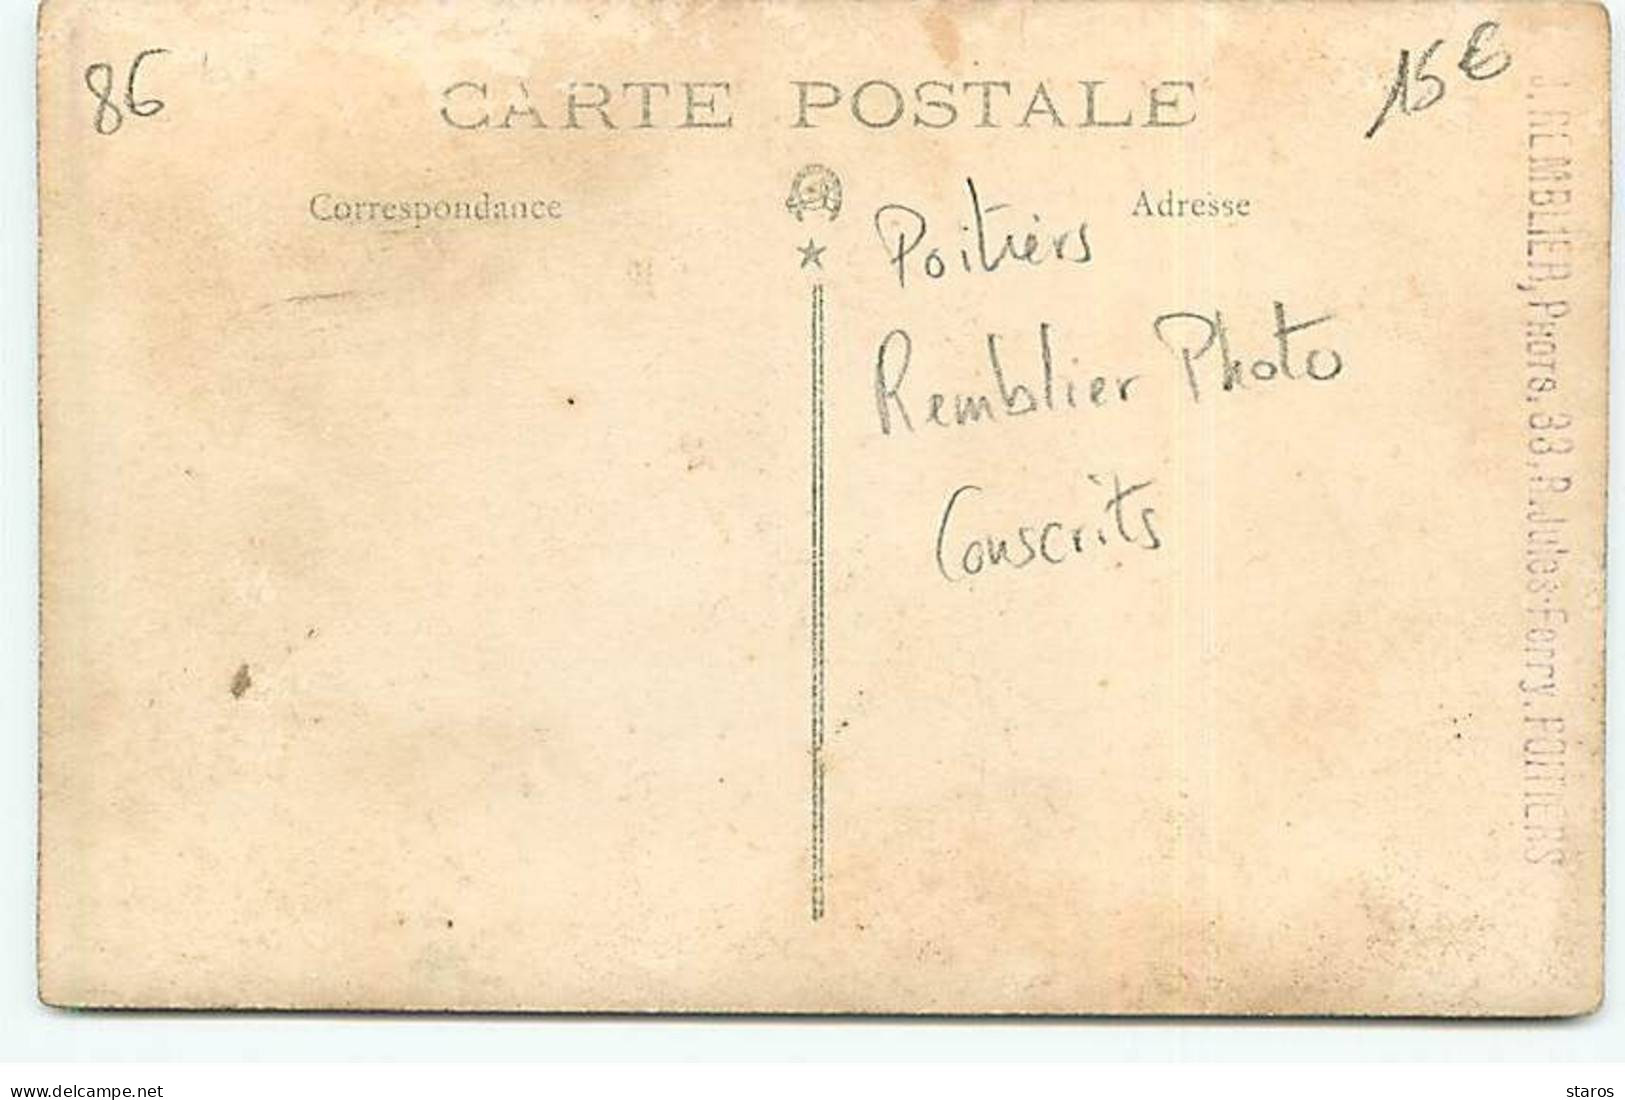 Carte Photo - POITIERS - Groupe De Conscrits - Remblier Photo - Poitiers